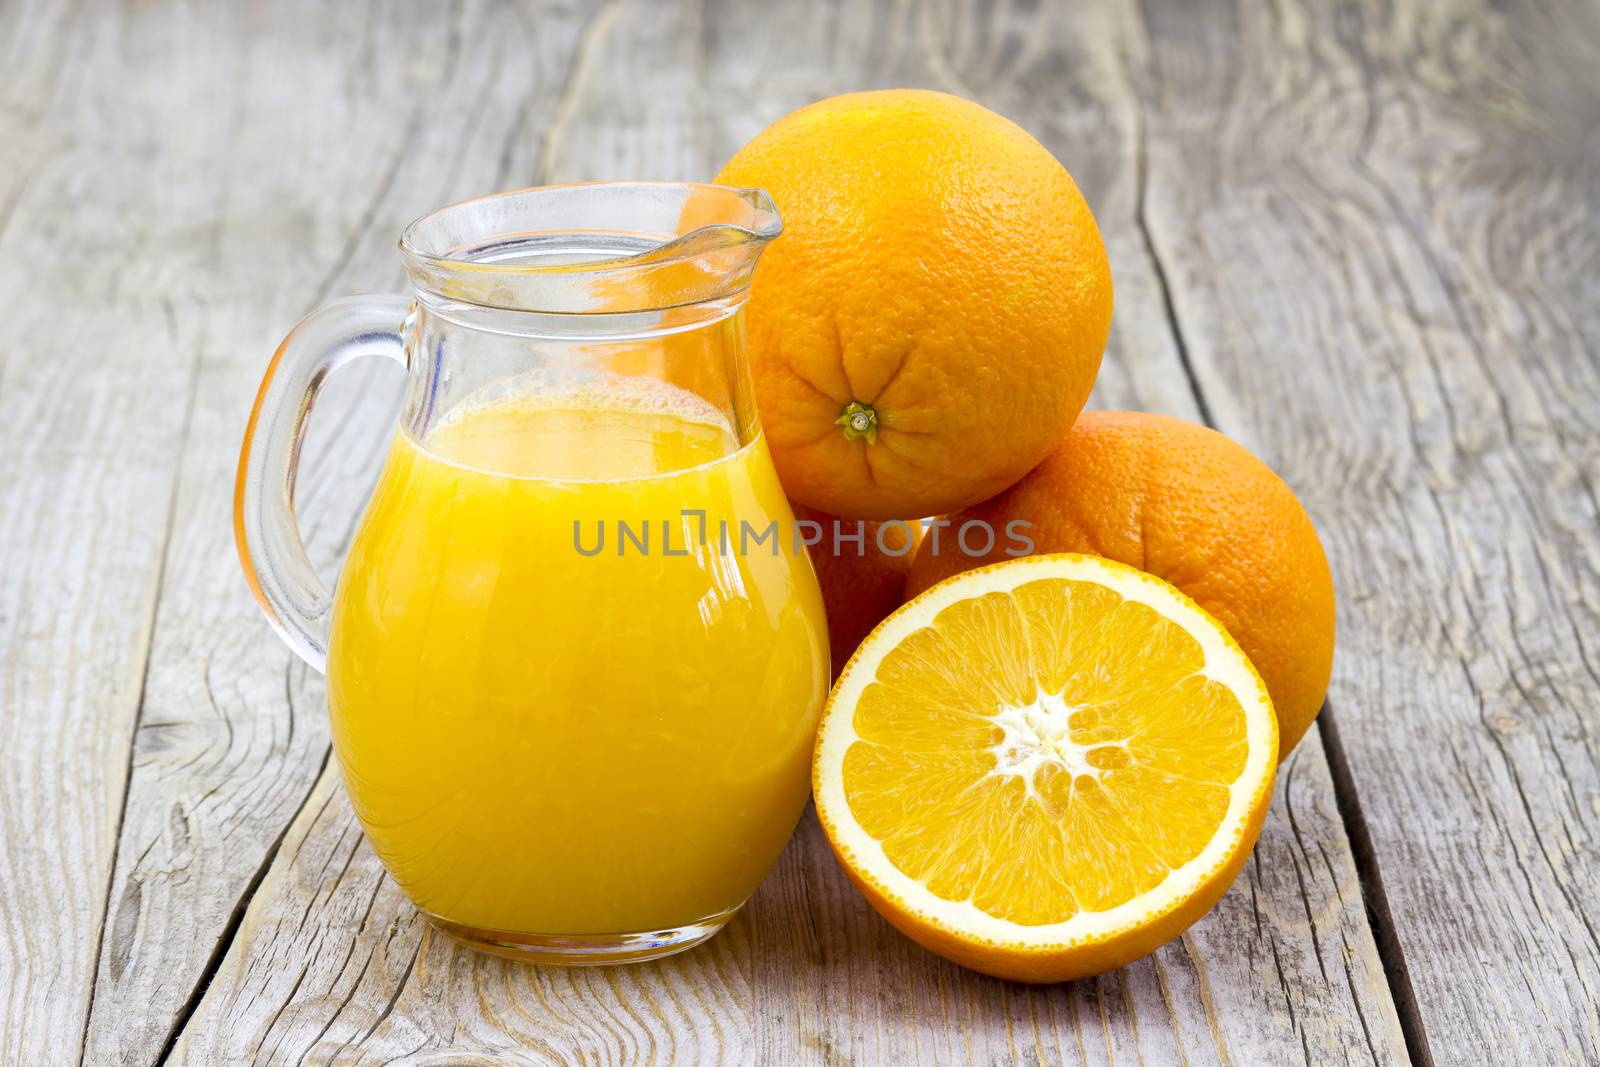 orange juice and fresh fruits on wooden background by miradrozdowski